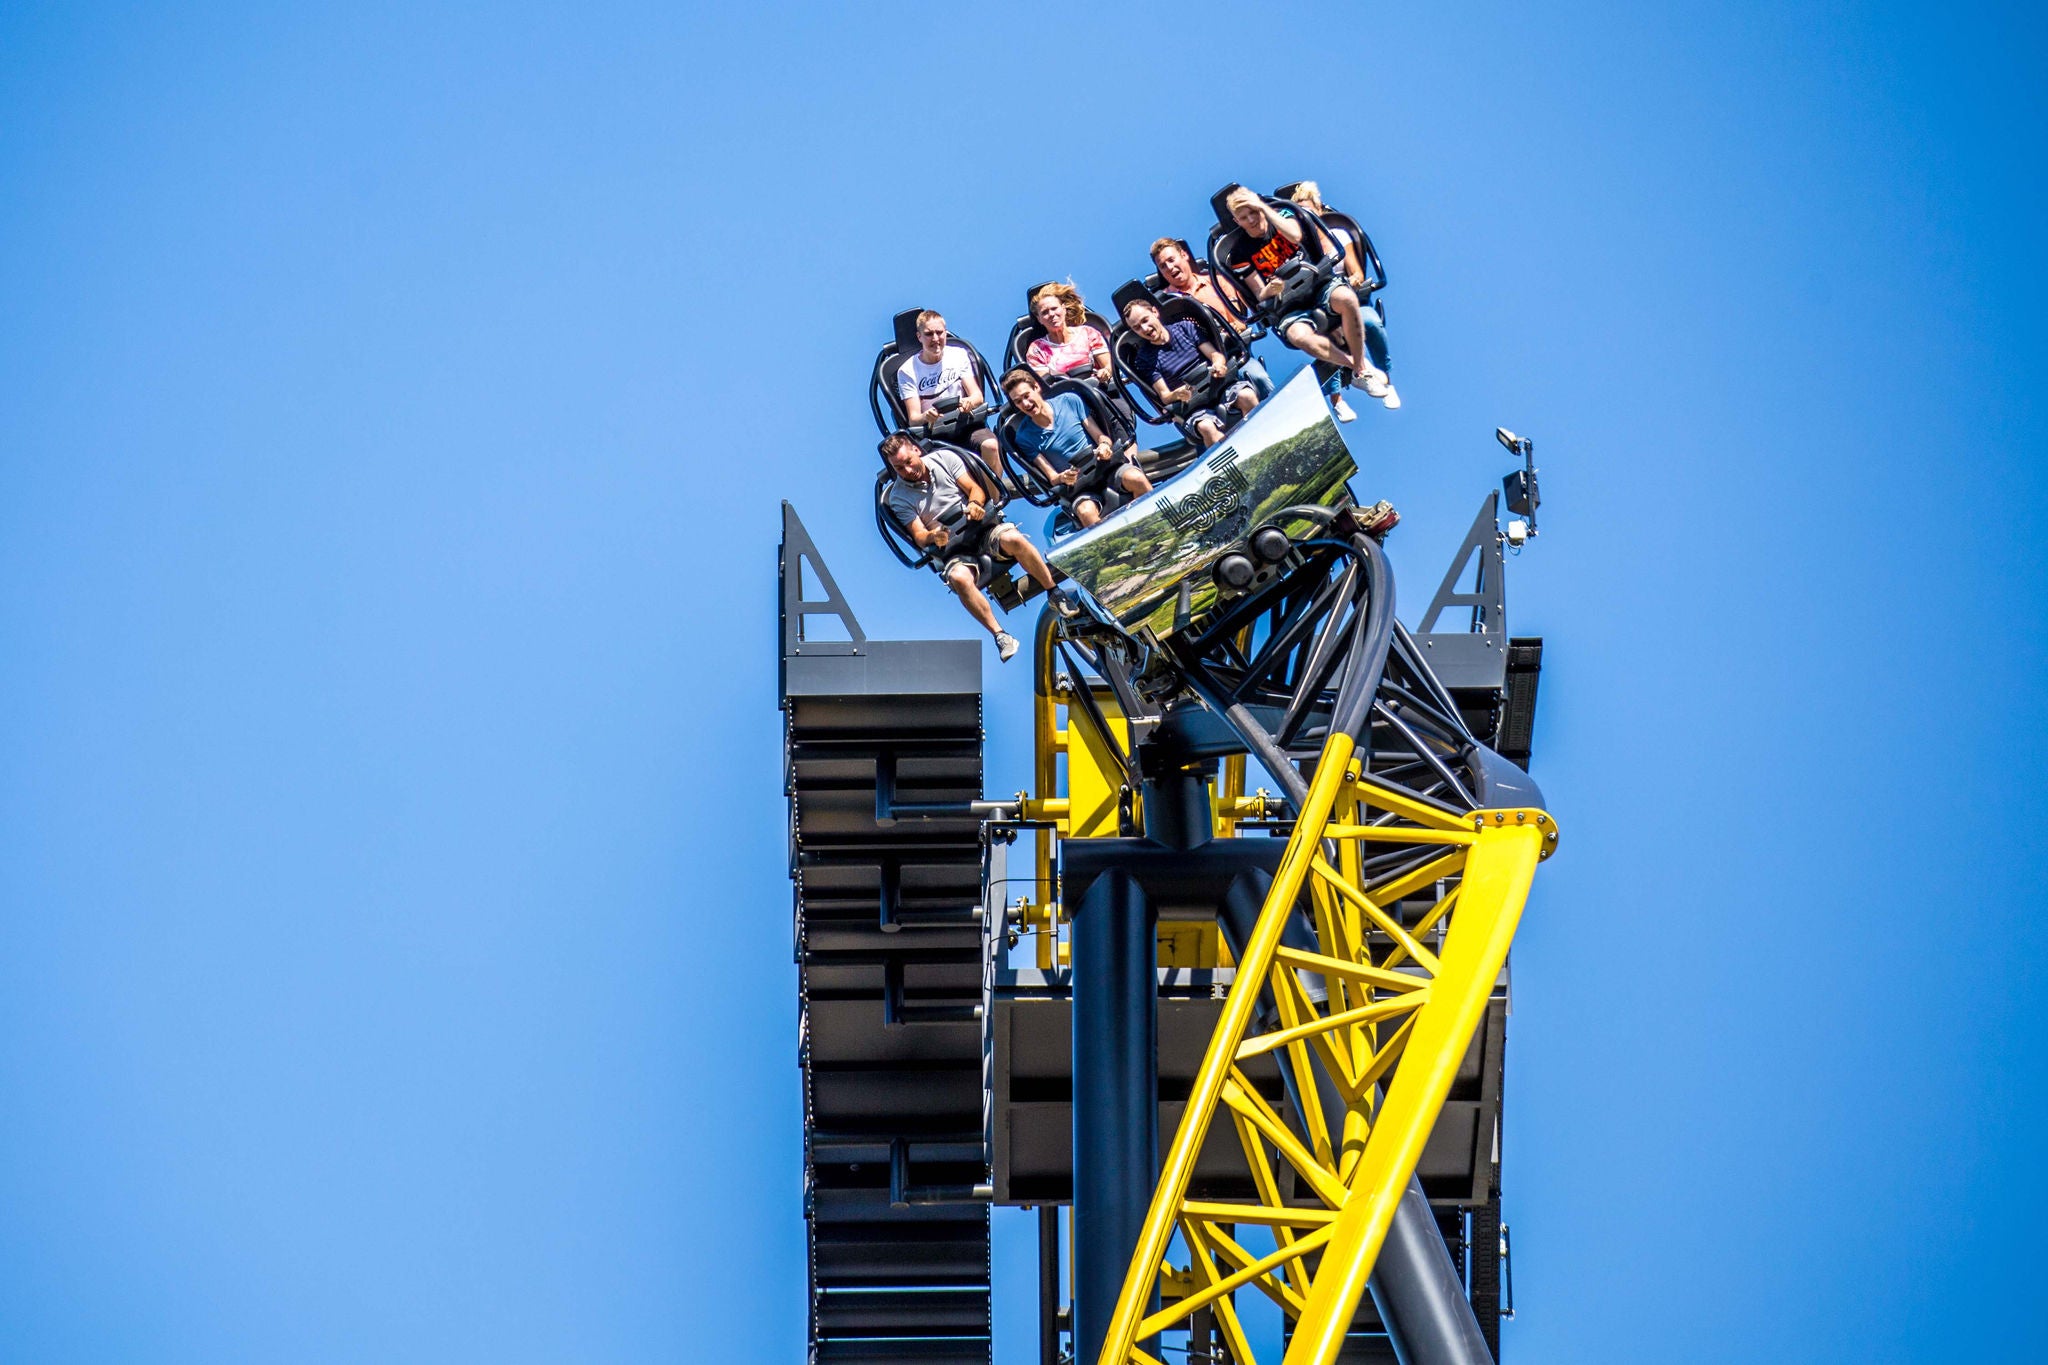 Maak een ritje in Lost Gravity, de bigdipper achtbaan in Walibi Holland.